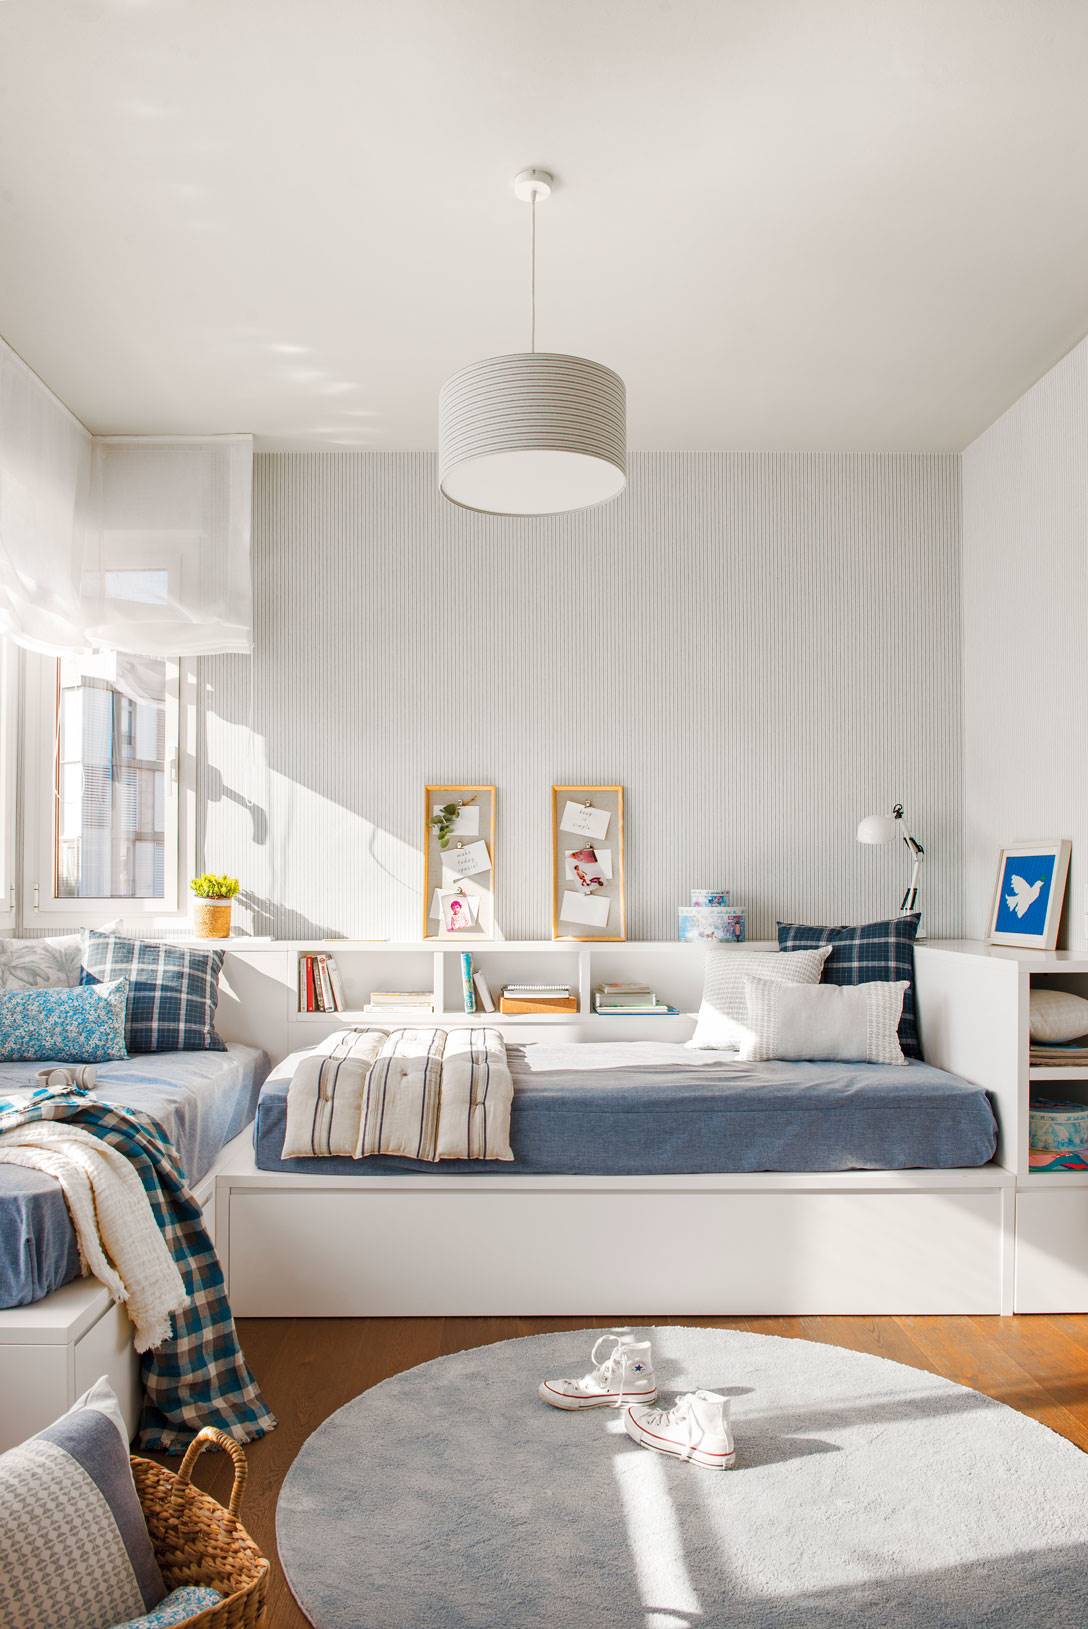 Dormitorio juvenil en blanco y azul con mueble a medida con espacio de almacenaje-522516. Con mucho espacio de almacenaje